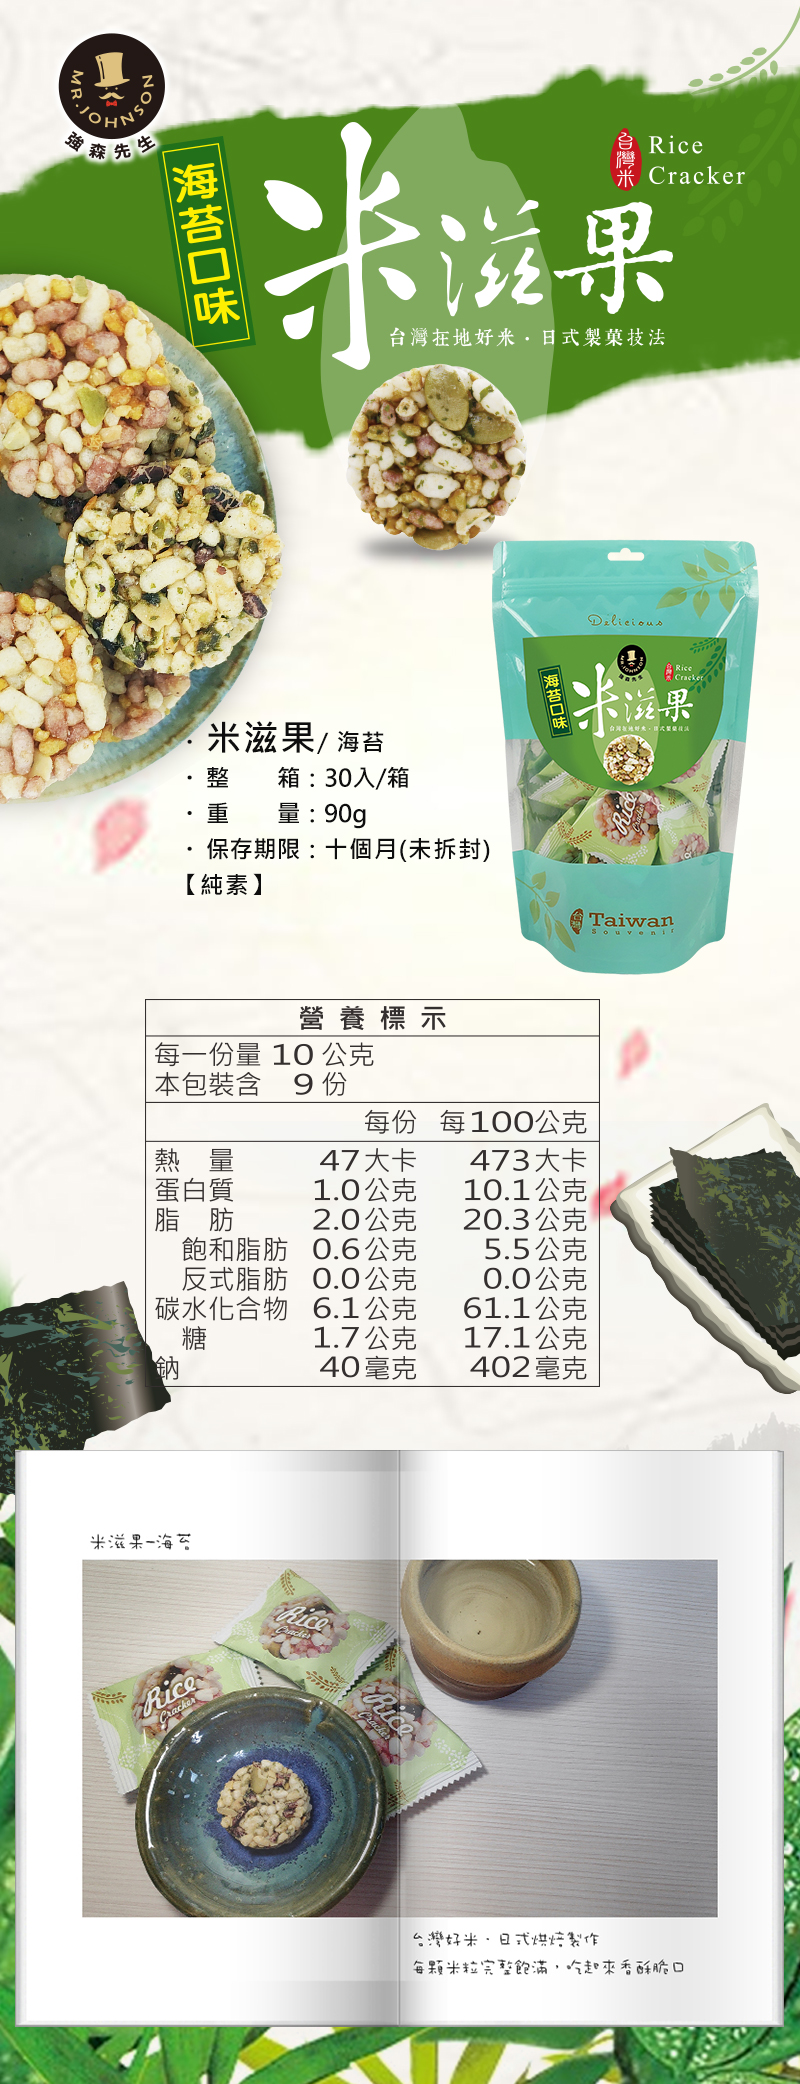 米滋果是嚴選台灣米來製作，每顆米都有完整飽滿，品質NO.1，一口一個方便又好吃，
採用日式製菓技術，肚子餓的時後加入一小杯玉米濃湯內，就變成米香米香又好吃的夜宵，又不怕胖，健康好吃。